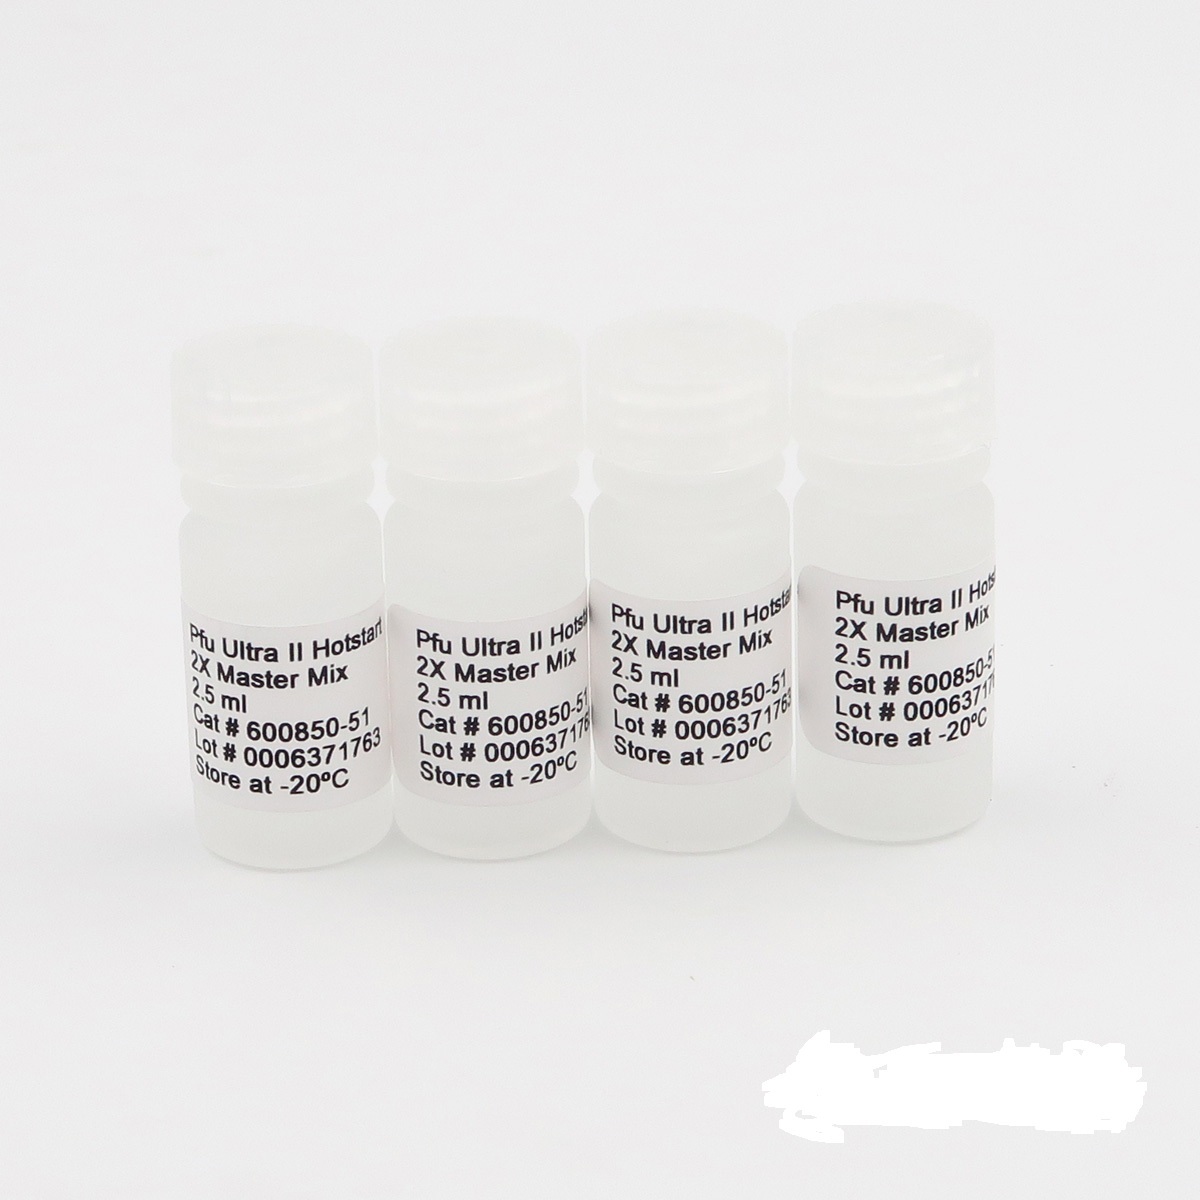 火鸡源性成分染料法荧光定量PCR试剂盒